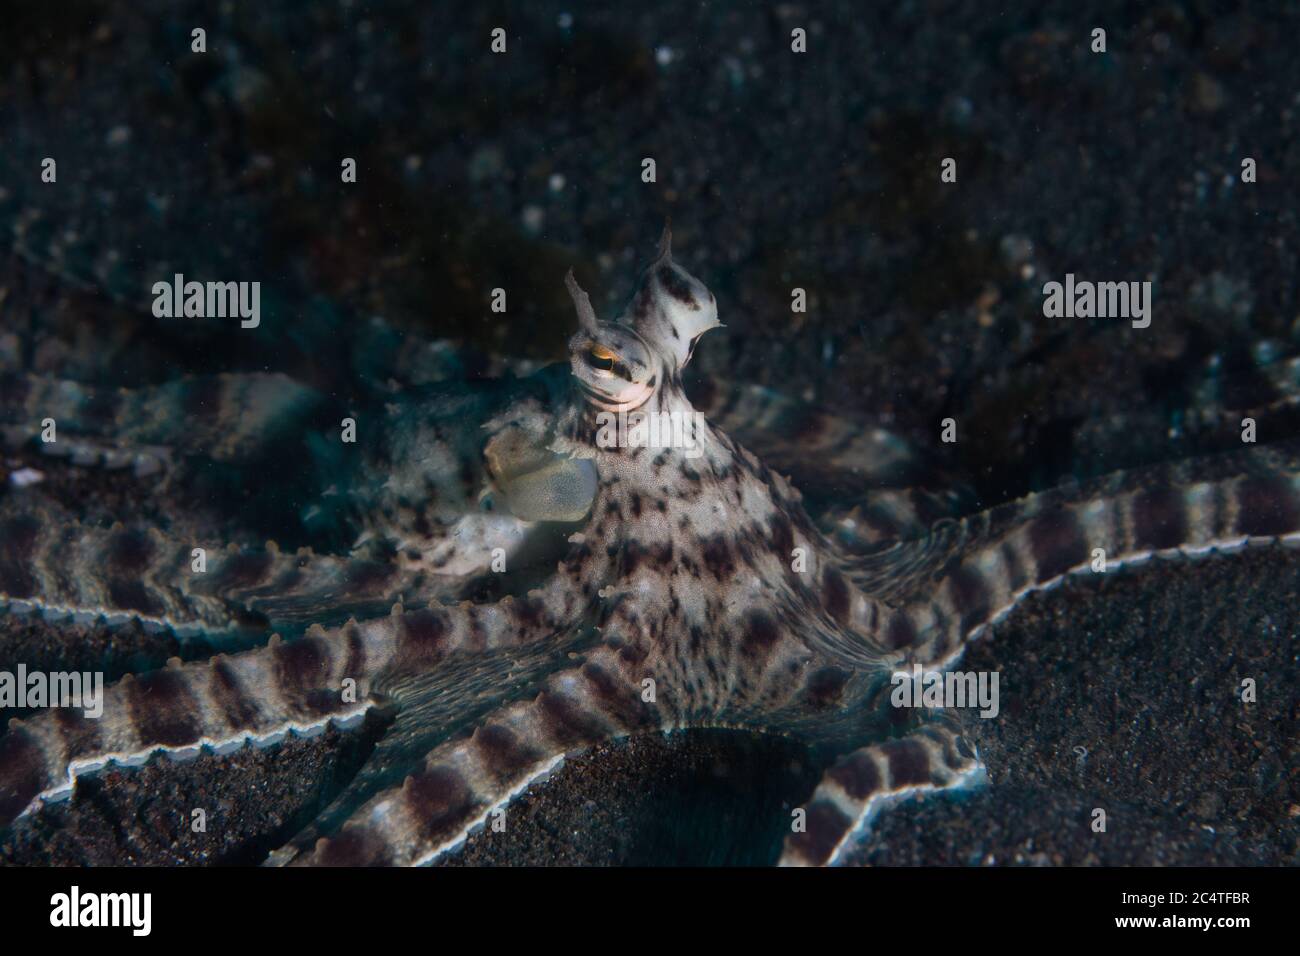 Ein imimischer Oktopus erkundet den schwarzen Sand der Lembeh Strait, Indonesien. Der Mimic Oktopus kann die Form und das Verhalten anderer Arten annehmen. Stockfoto